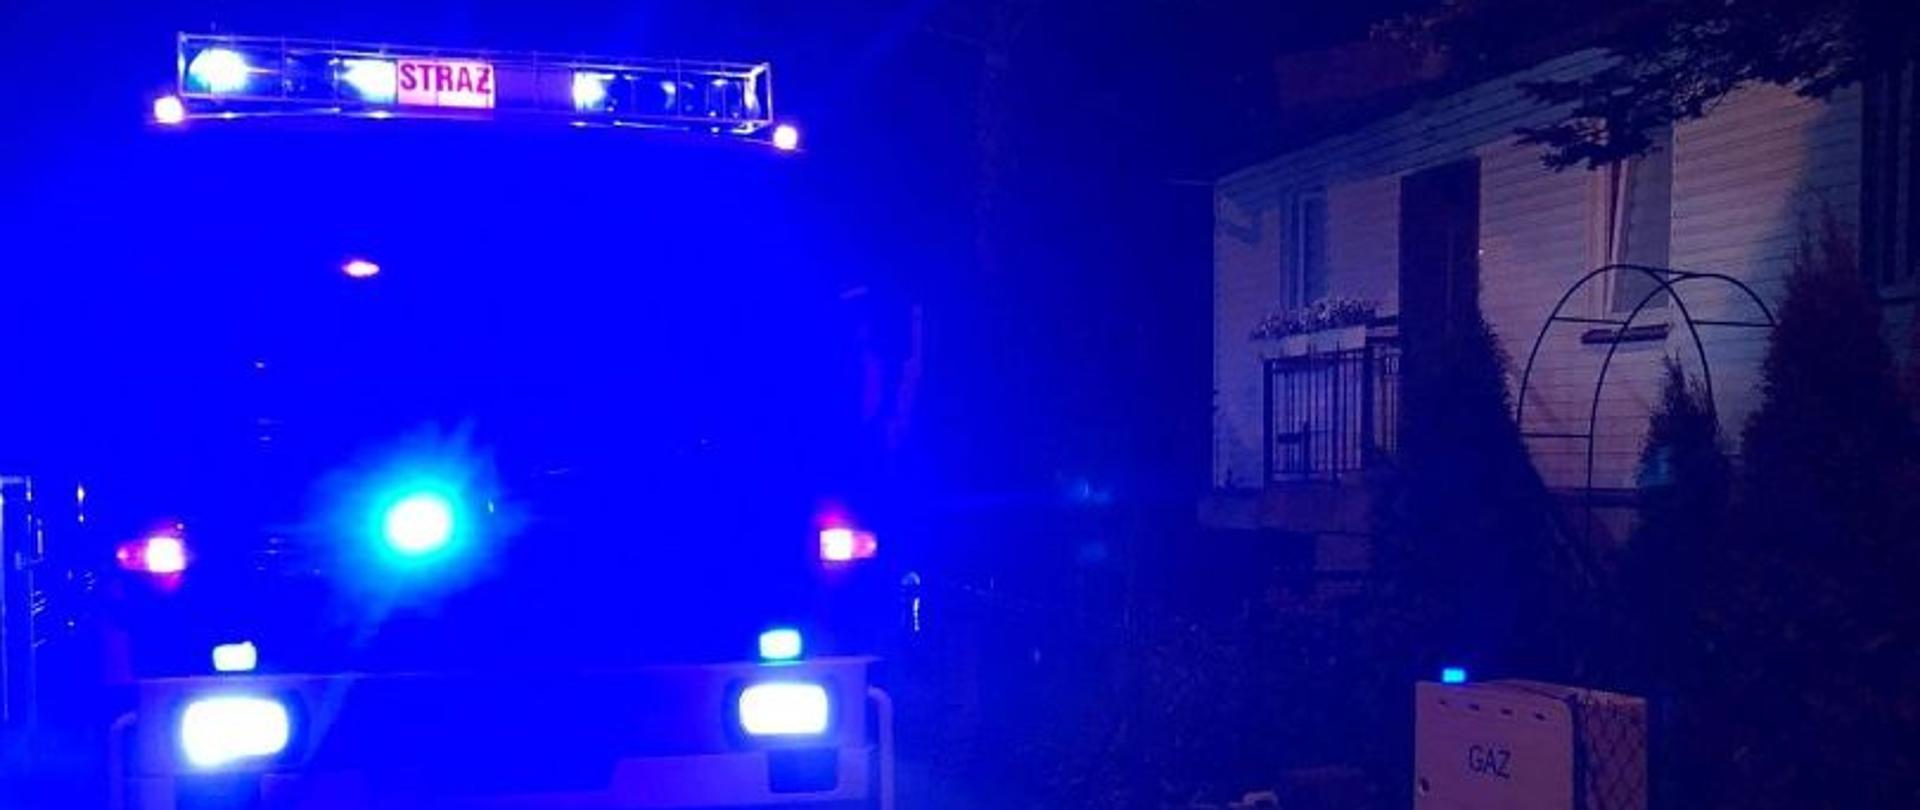 pojazd pożarniczy zaparkowany na ulicy przy budynku objętym pożarem w porze nocnej z zapalonymi niebieskimi światłami alarmowymi